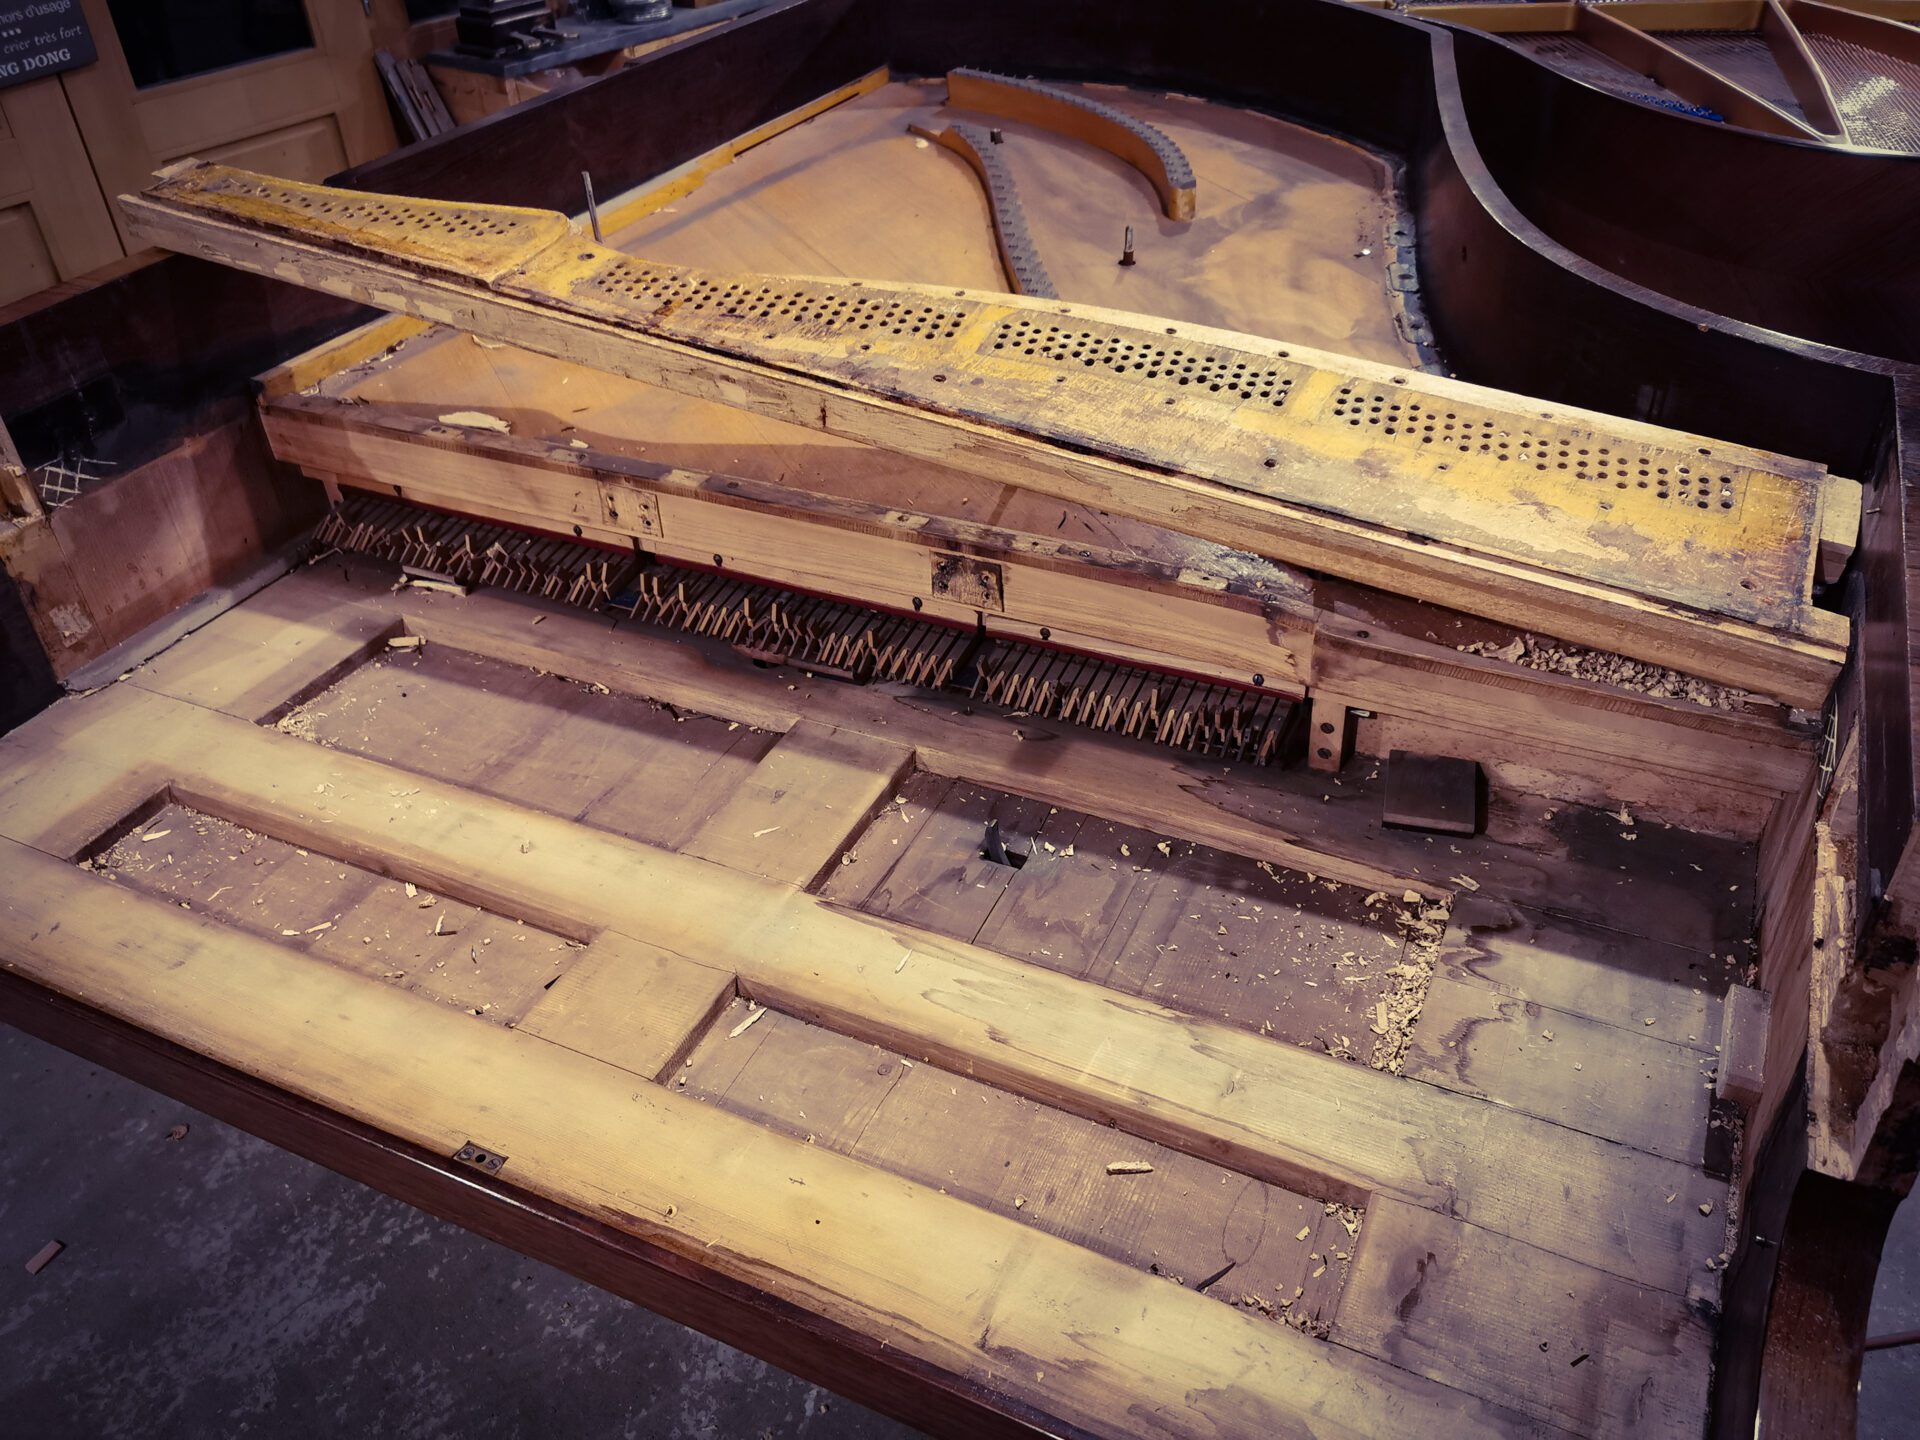 extraction du vieux sommier de piano demi queue Pleyel 2m04 de 1899 dans atelier de restauration de pianos de Marion Lainé en Savoie